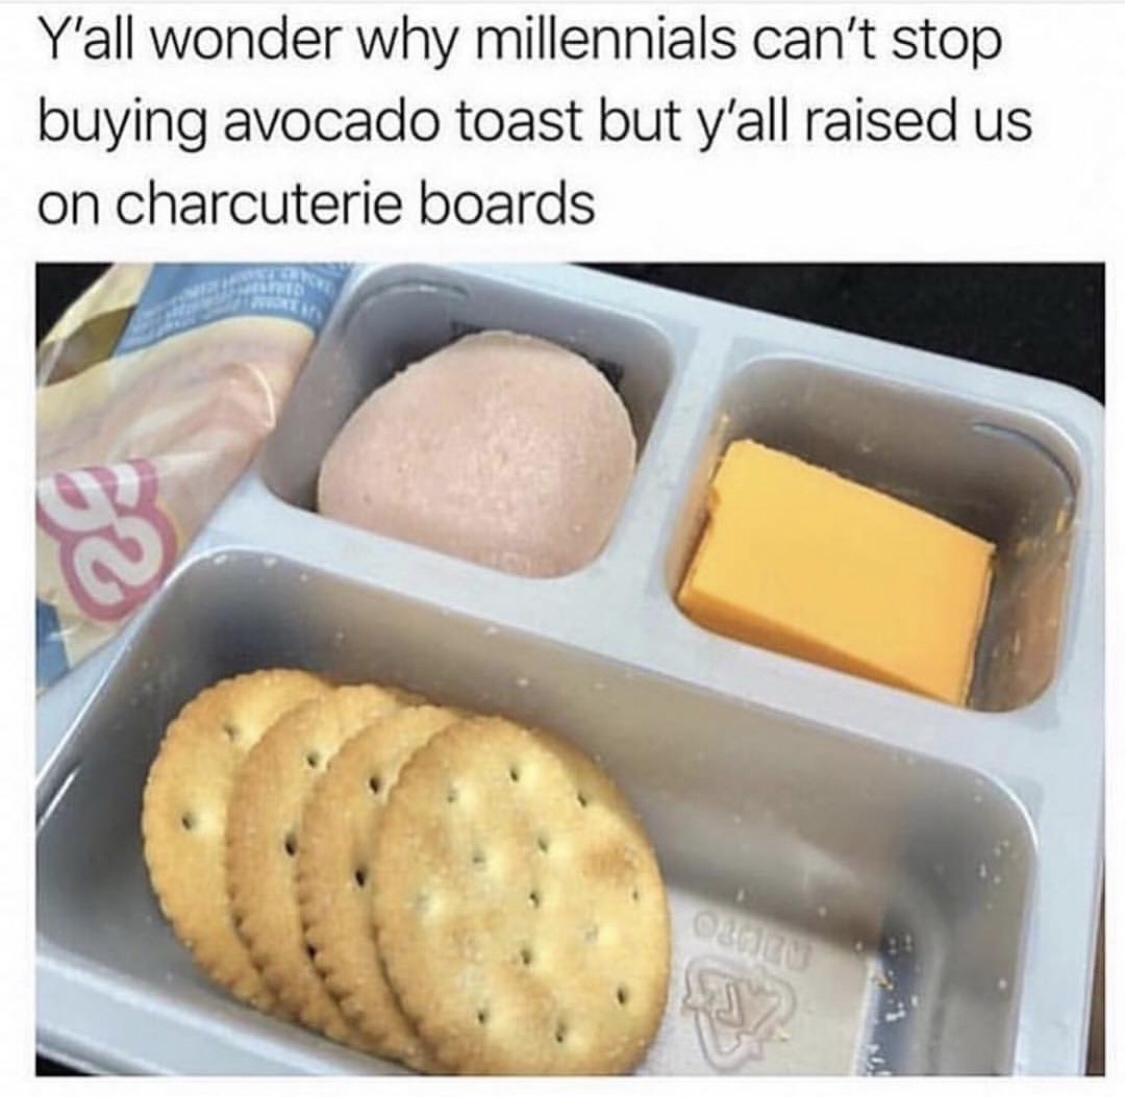 millennials avocado toast meme - Y'all wonder why millennials can't stop buying avocado toast but y'all raised us on charcuterie boards